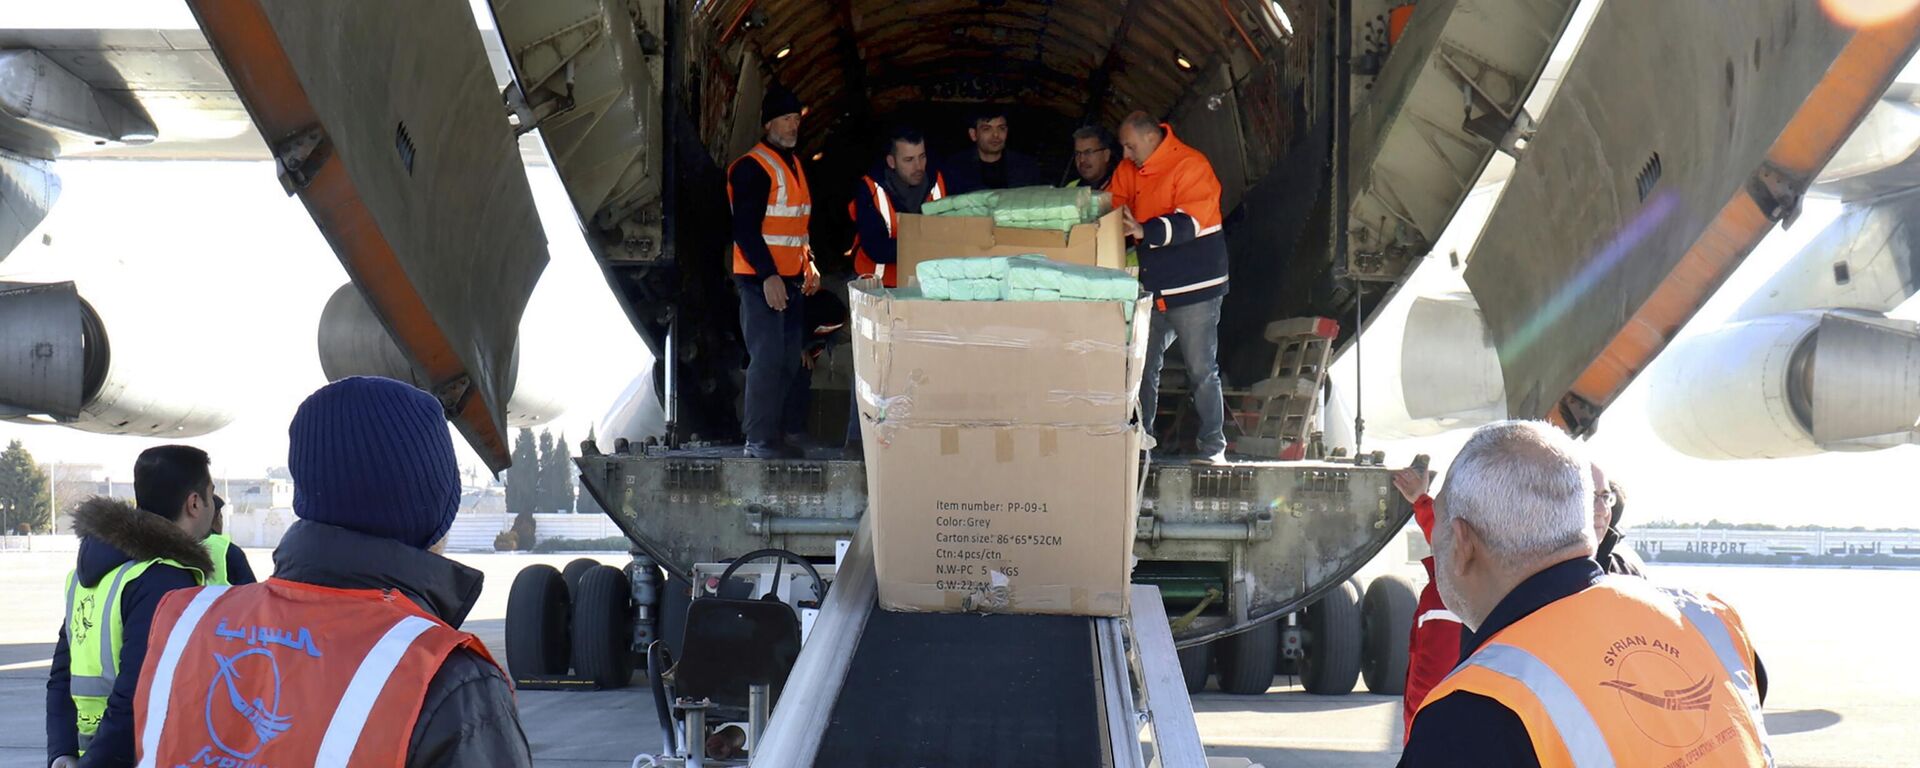 Trabalhadores descarregam ajuda humanitária enviada à Síria após terremoto devastador, no aeroporto de Aleppo, na Síria, em 9 de fevereiro de 2023 - Sputnik Brasil, 1920, 09.02.2023